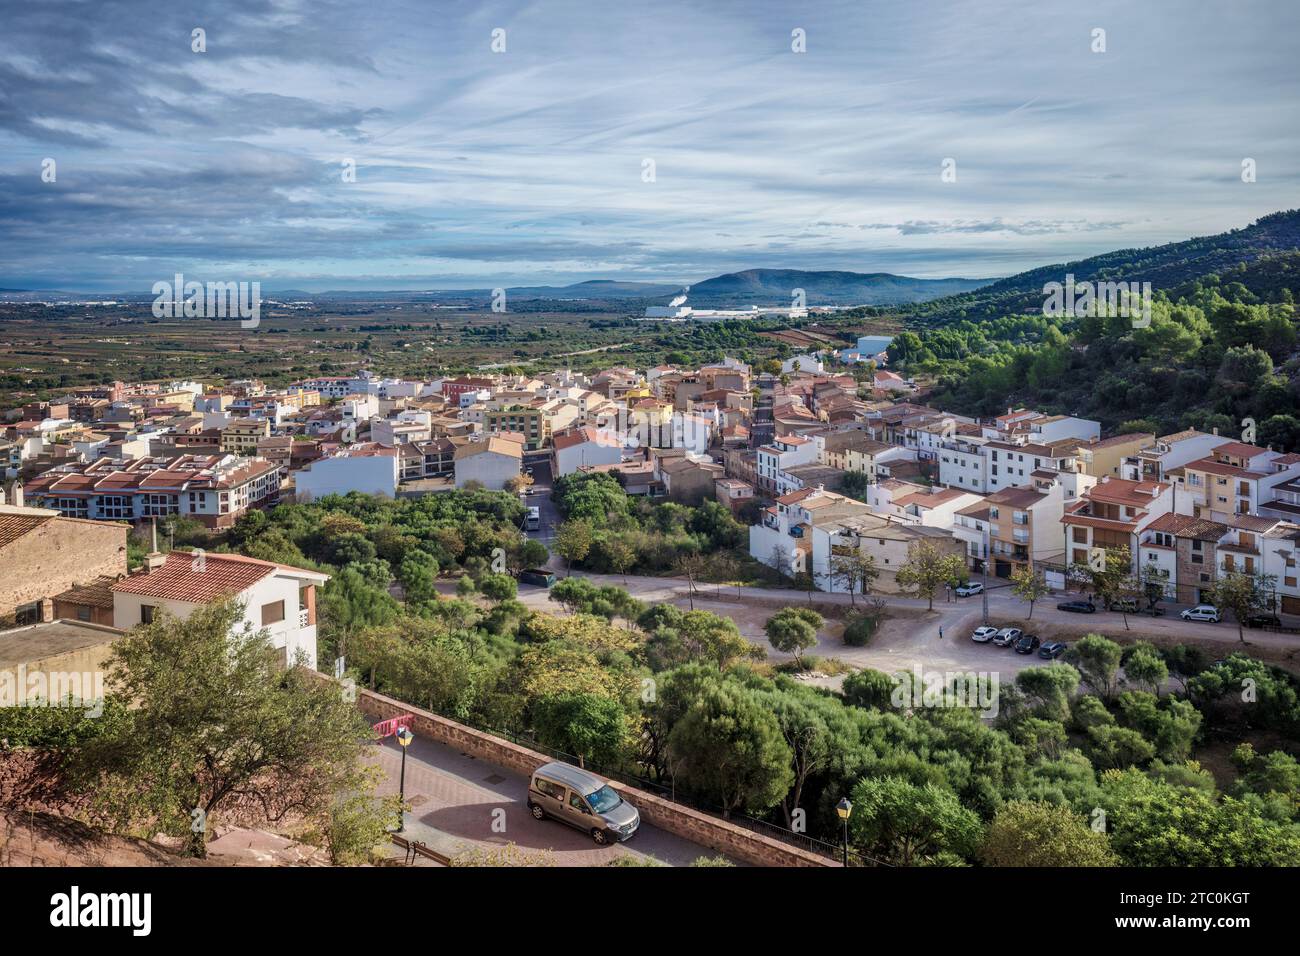 Vue panoramique aérienne urbaine de la ville de Villafames (Vilafames) de la commune de Castellón, Communauté Valencienne, Espagne, Europe Banque D'Images